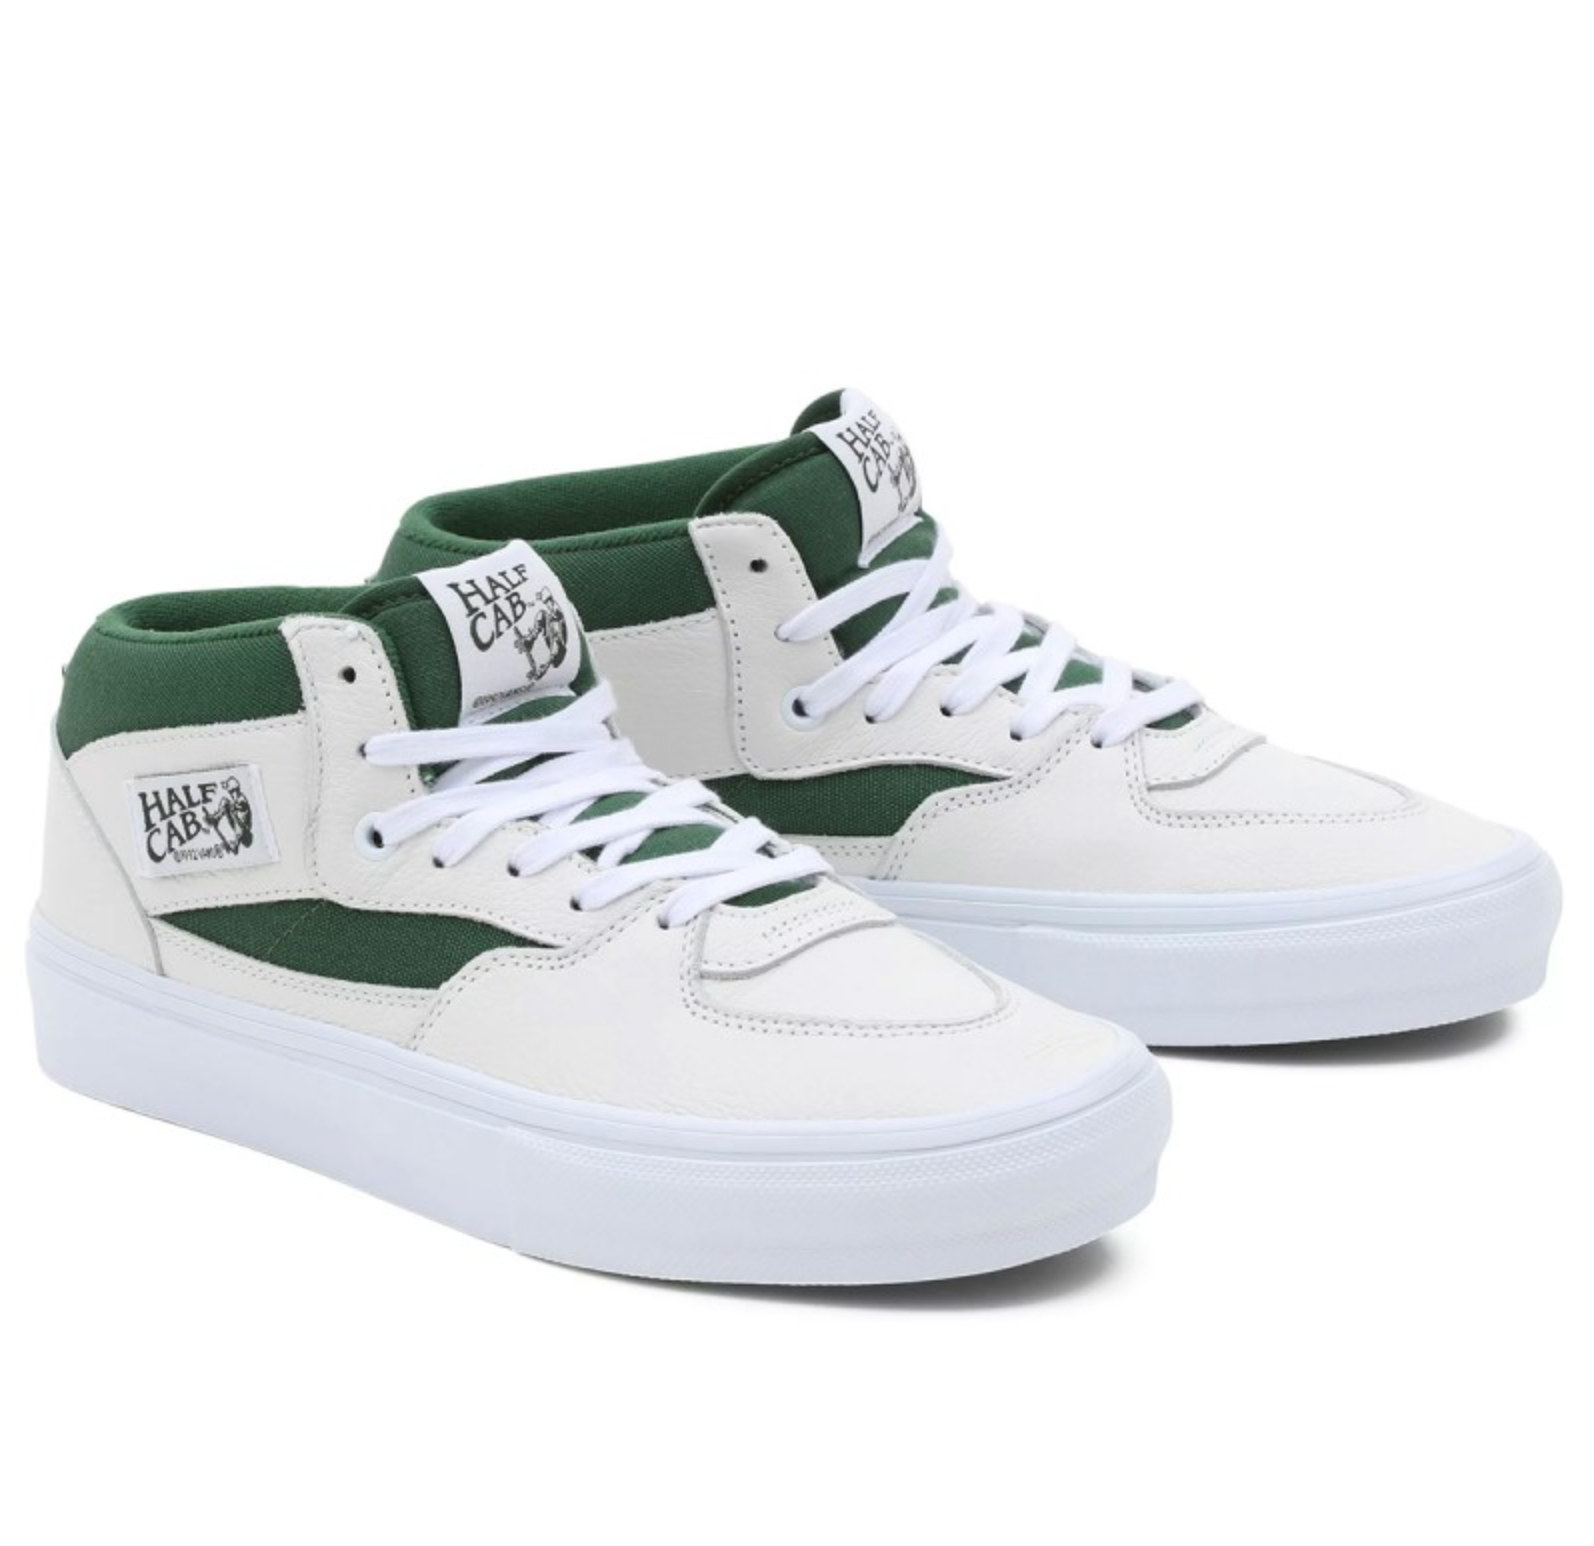 Zij zijn buis Nauwgezet Vans Skate Half Cab Shoes - White/Green - Directive Boardshop